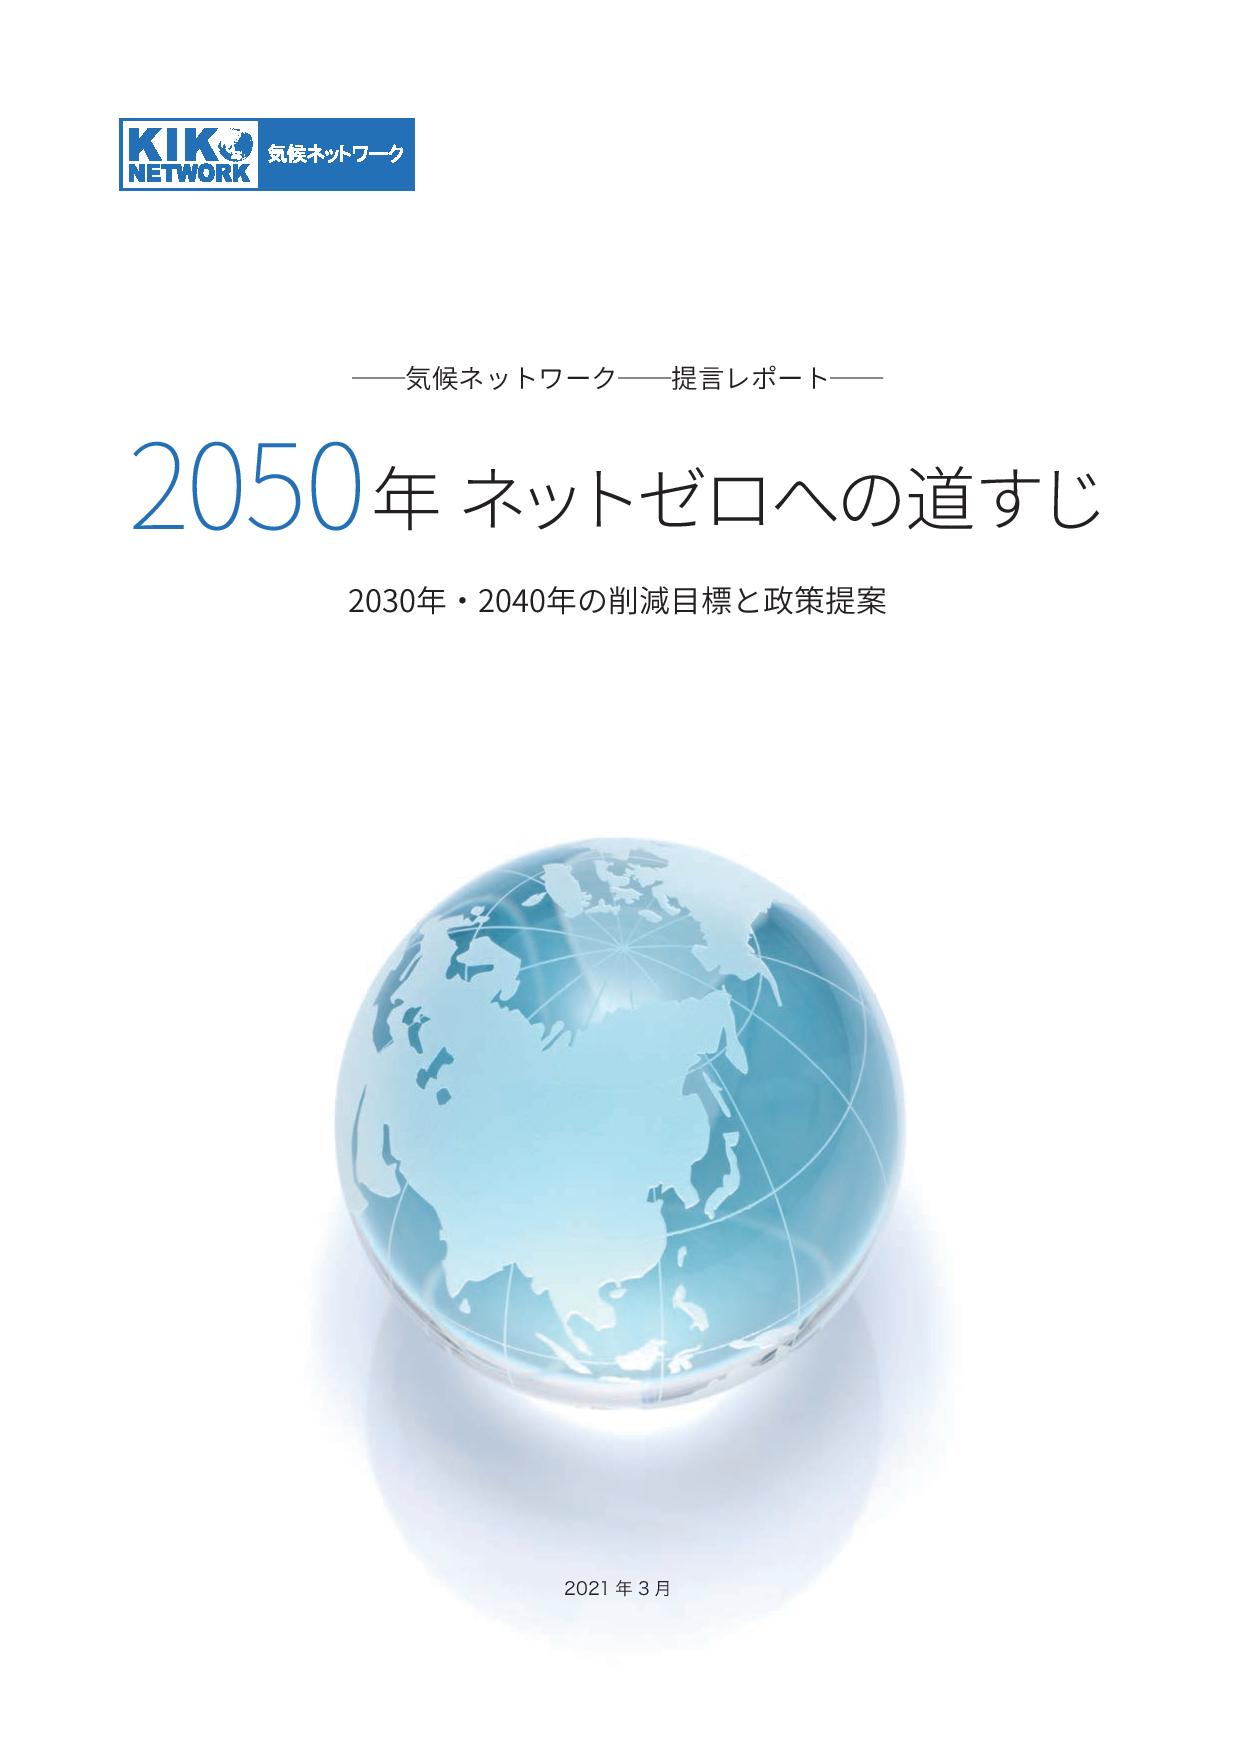 【レポート】気候ネットワーク「2050年ネットゼロへの道すじ」